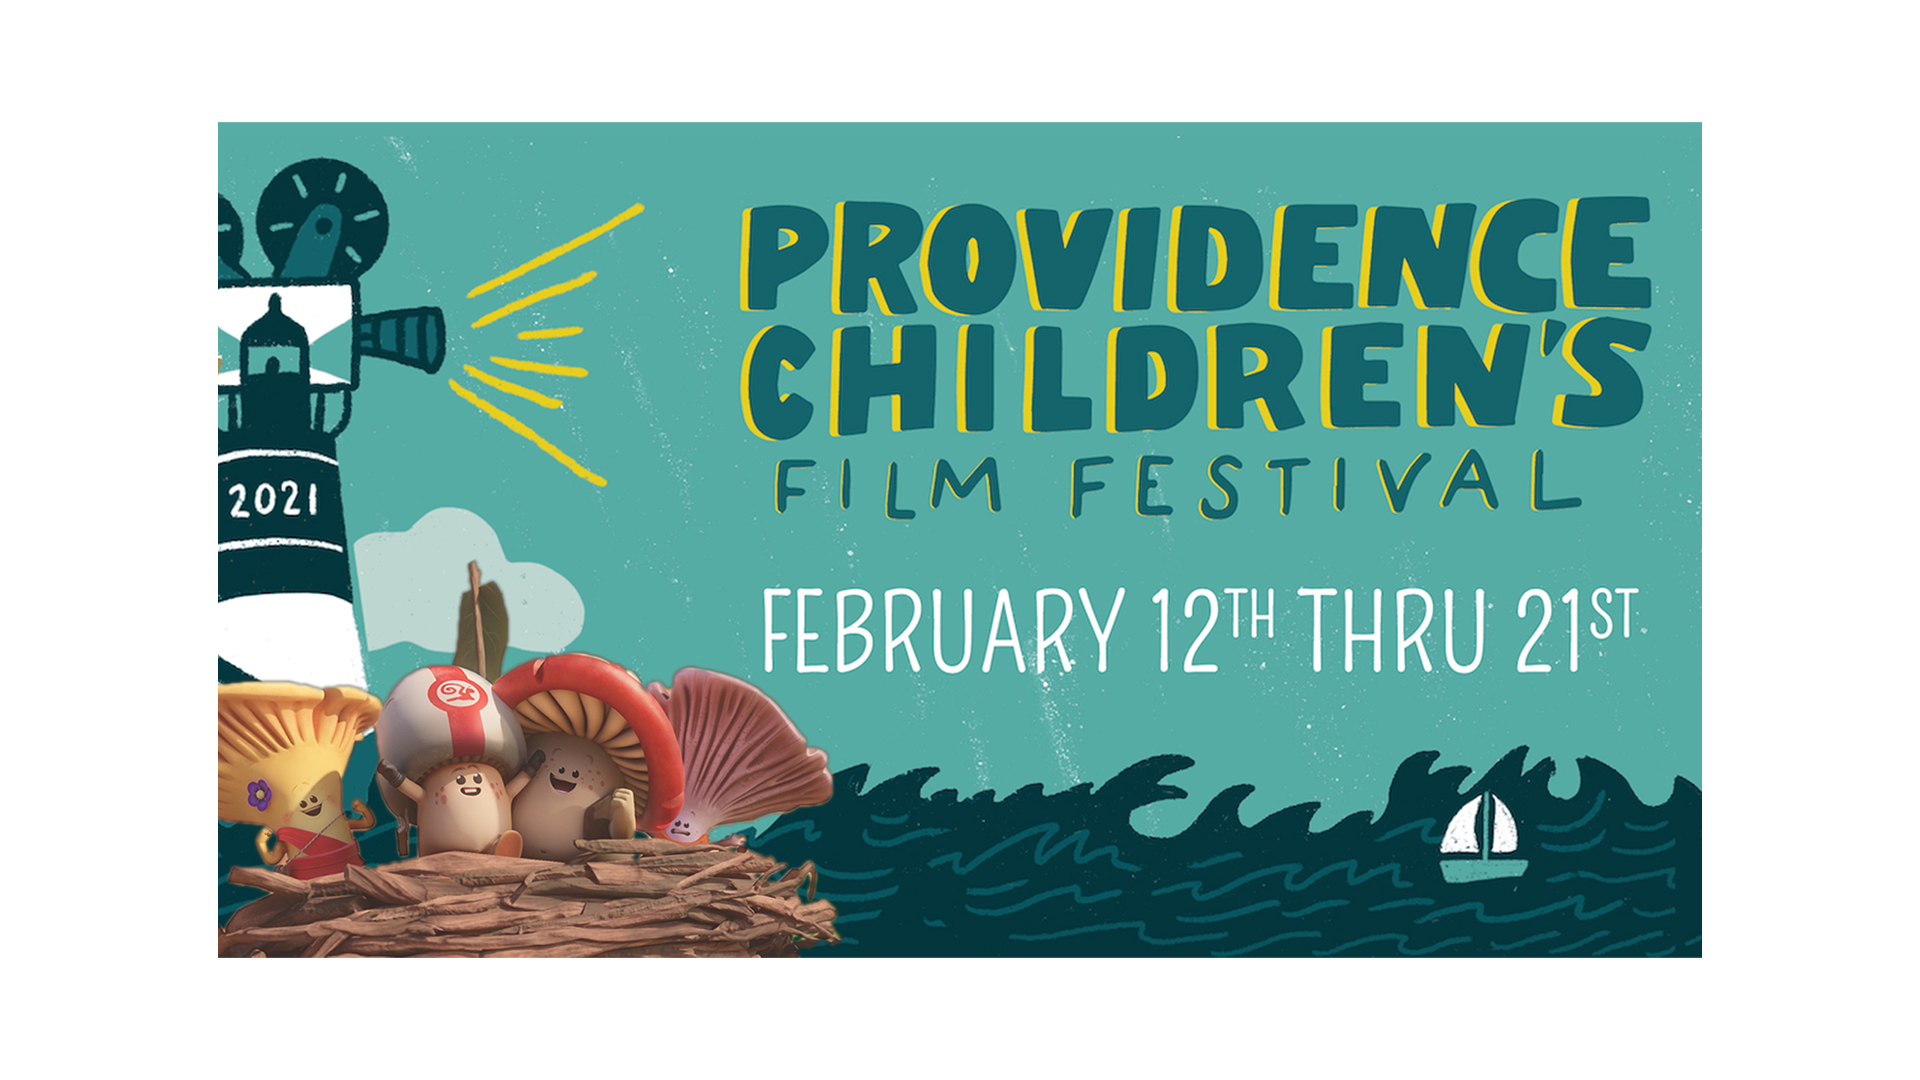 Mush-Mush selected FOR THE Providence children’s film festival